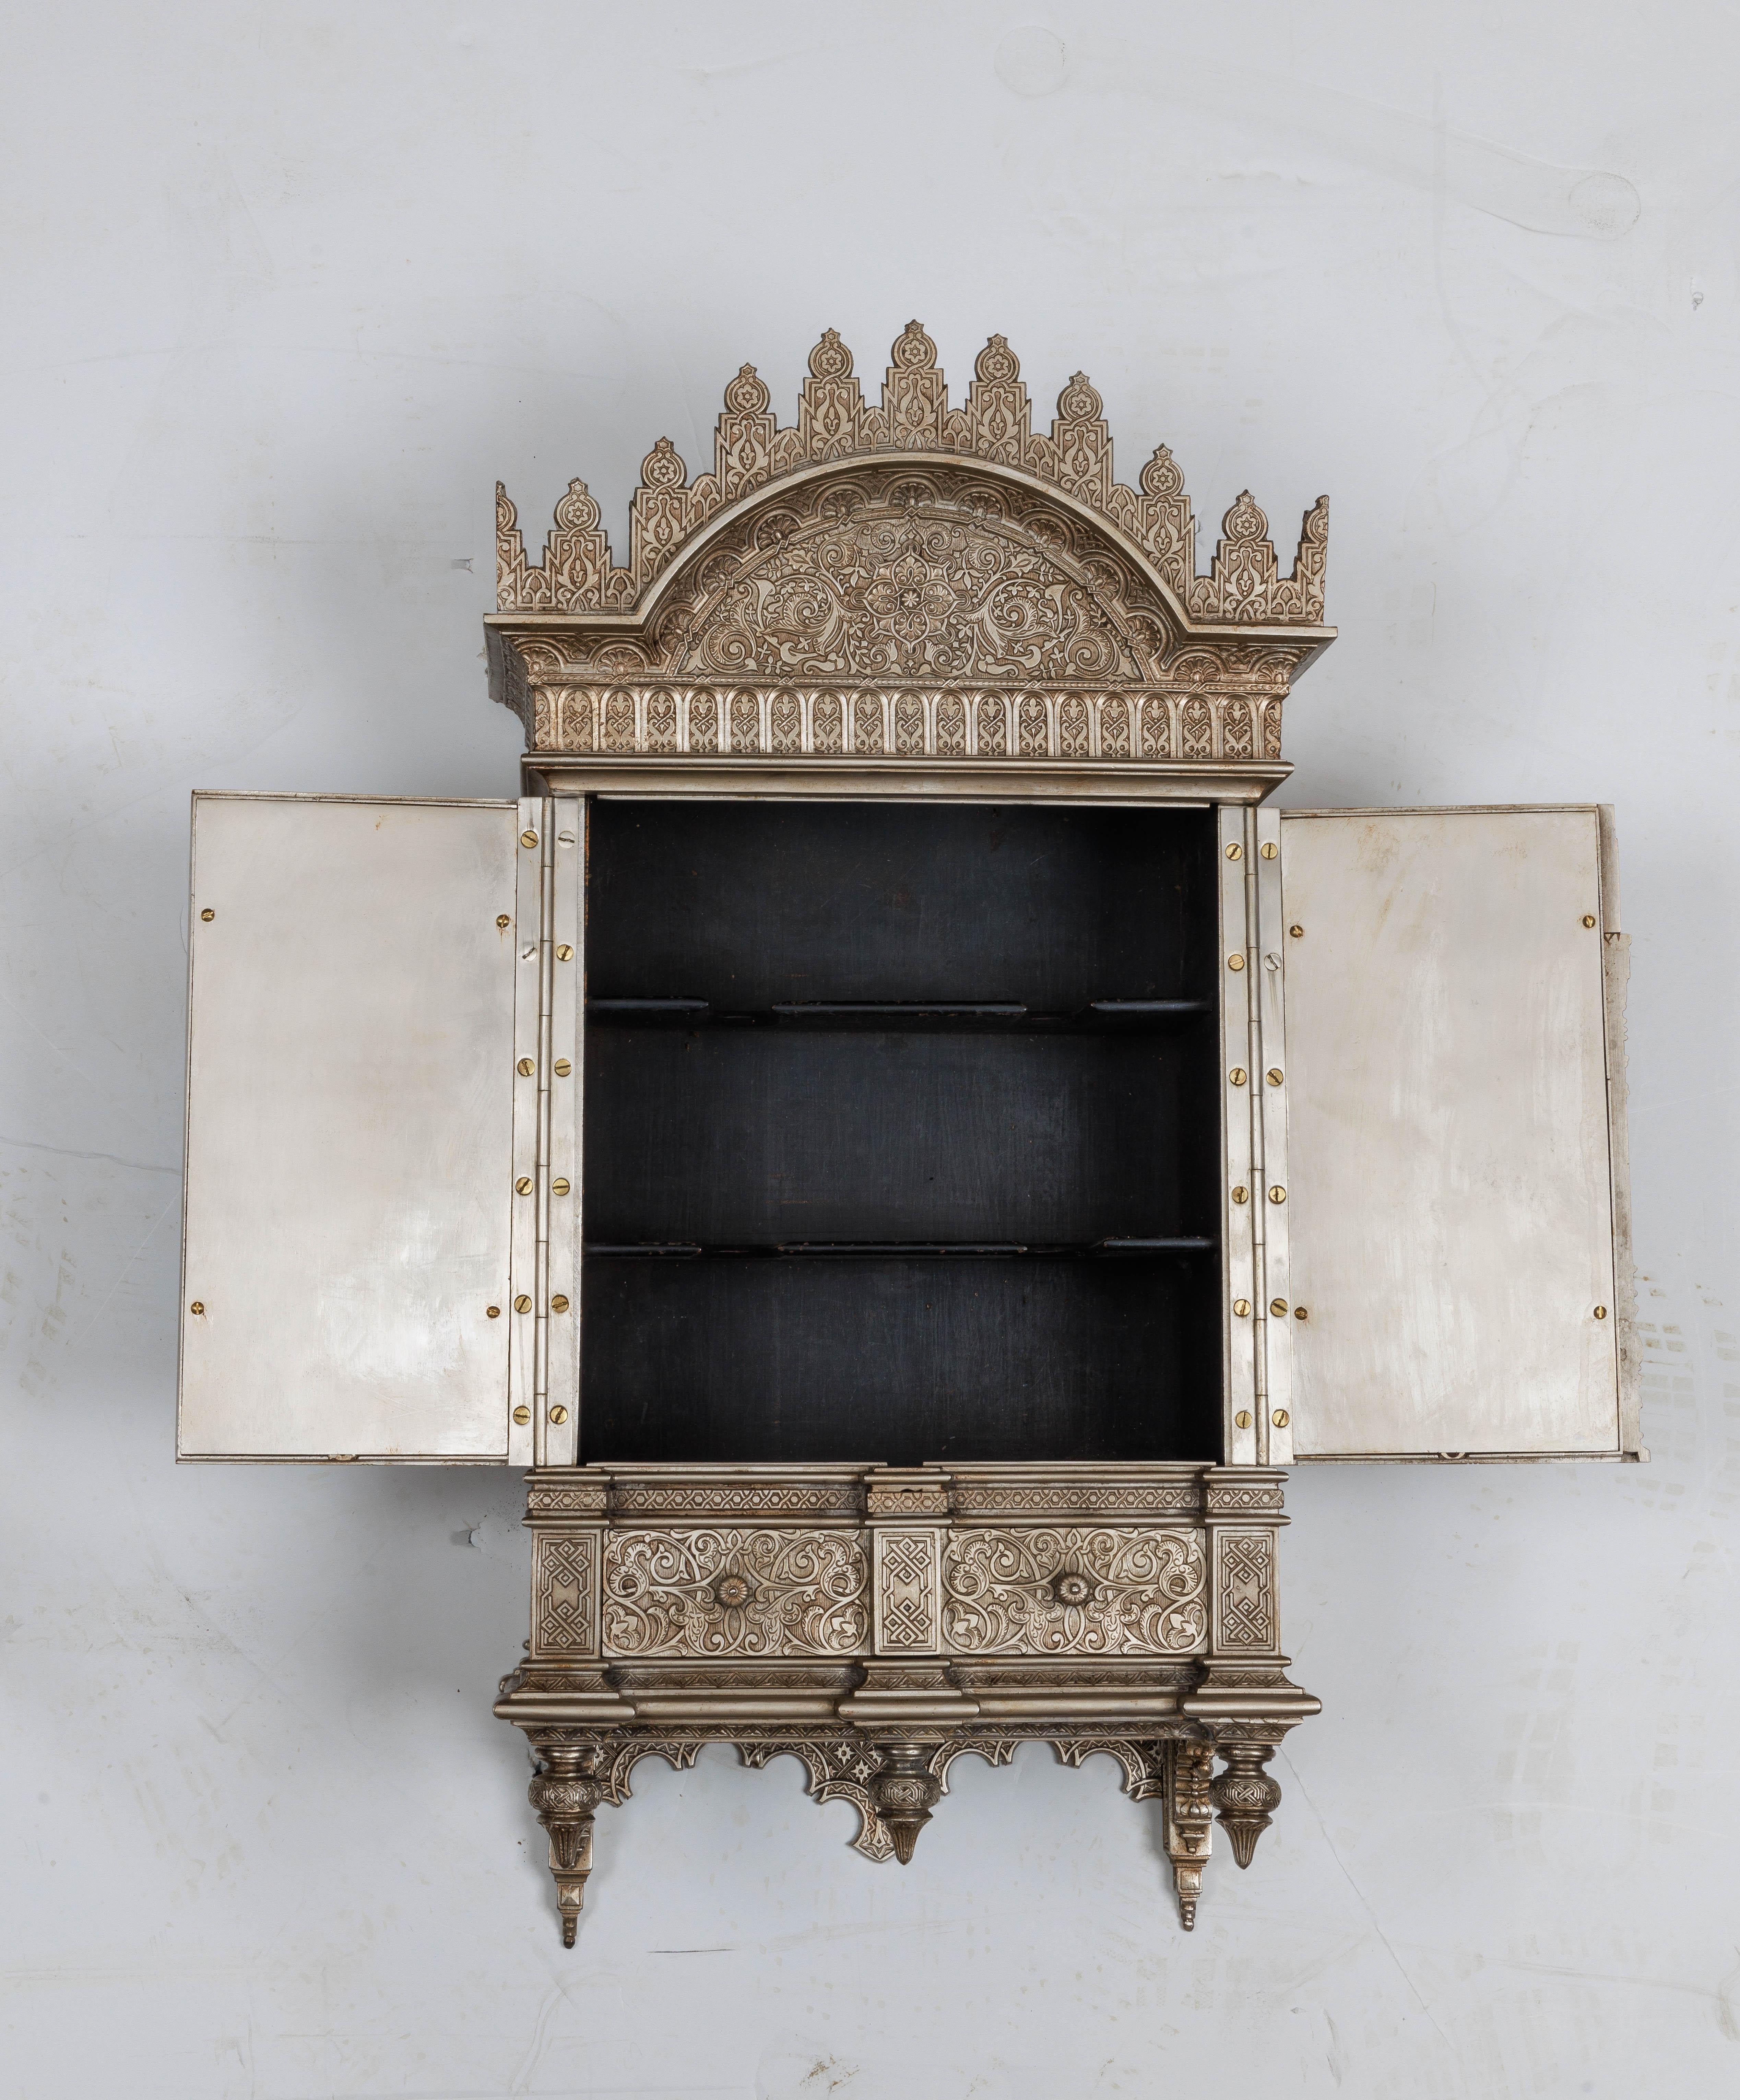 quran cabinet design